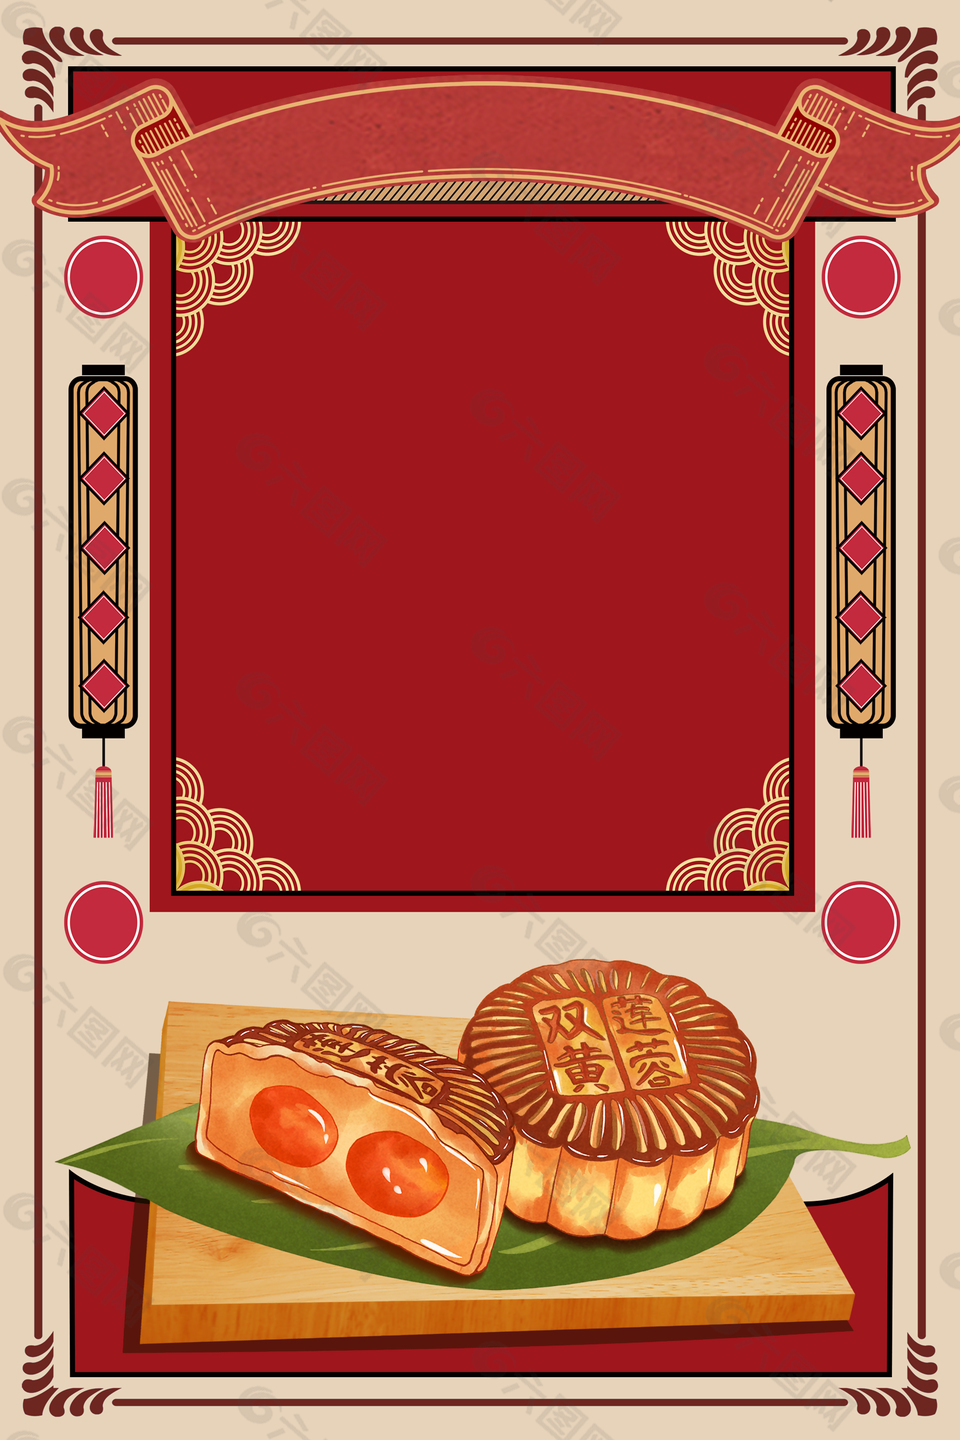 中秋节中华味道月饼背景